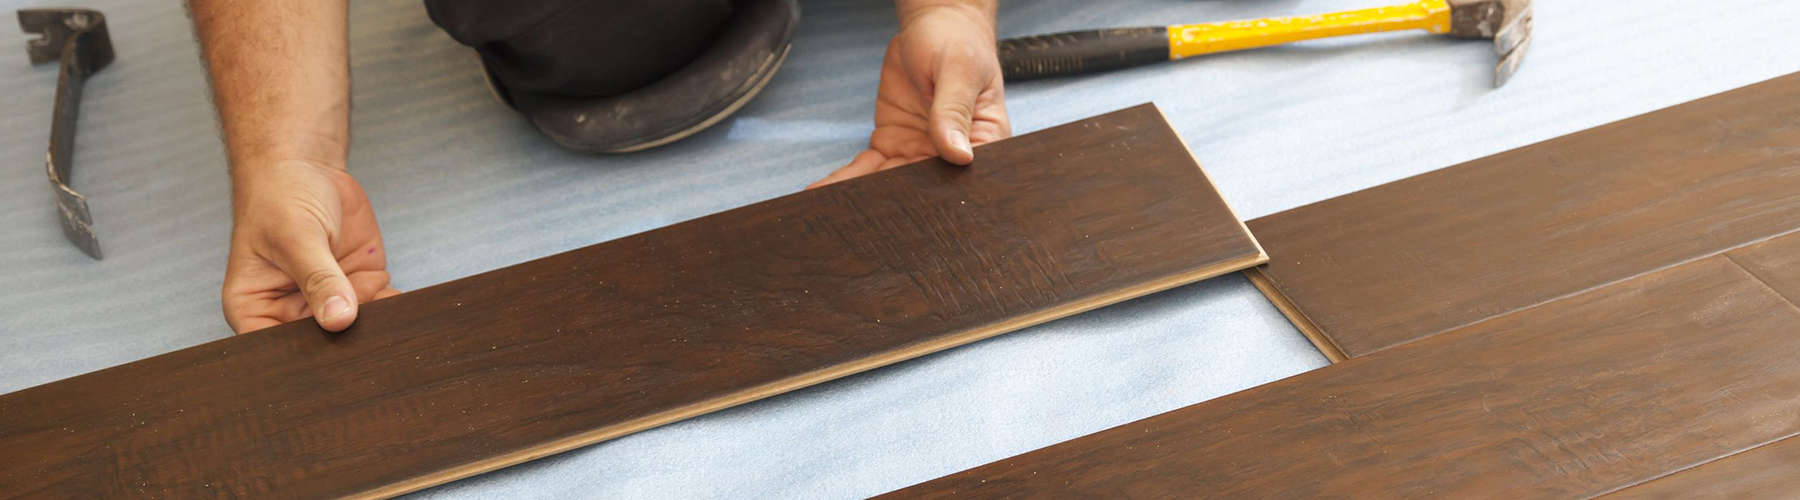 How To Install Vinyl Plank Flooring, Installing A Vinyl Plank Floor